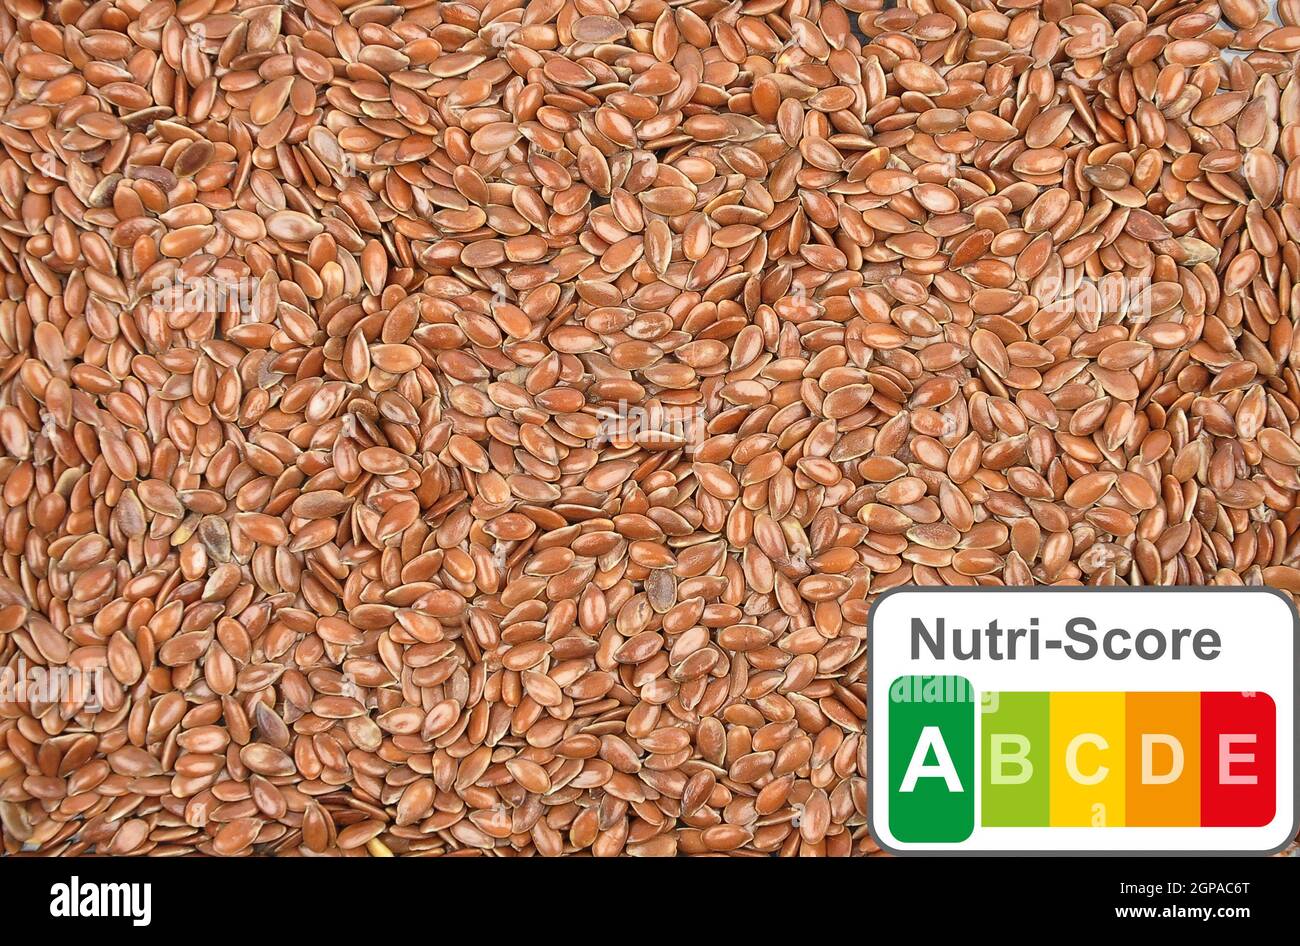 Präsentation der Lebensmittelkennzeichnung mit dem Nutri-Score von Leinsamen Stockfoto